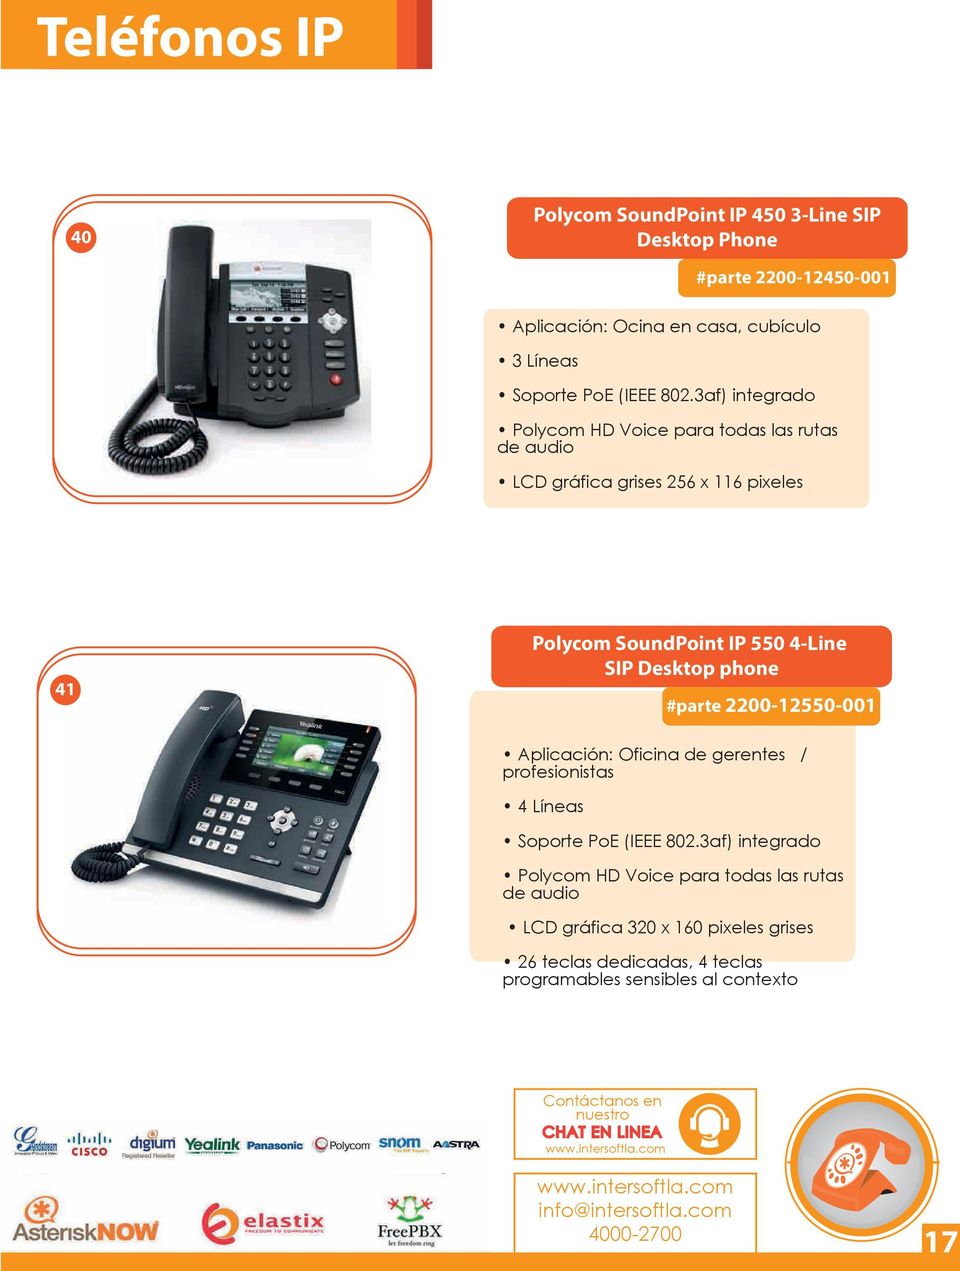 SIP Desktop phone #parte 2200-12550-001 Aplicación: Oficina de gerentes / profesionistas 4 Líneas Soporte PoE (IEEE 802.